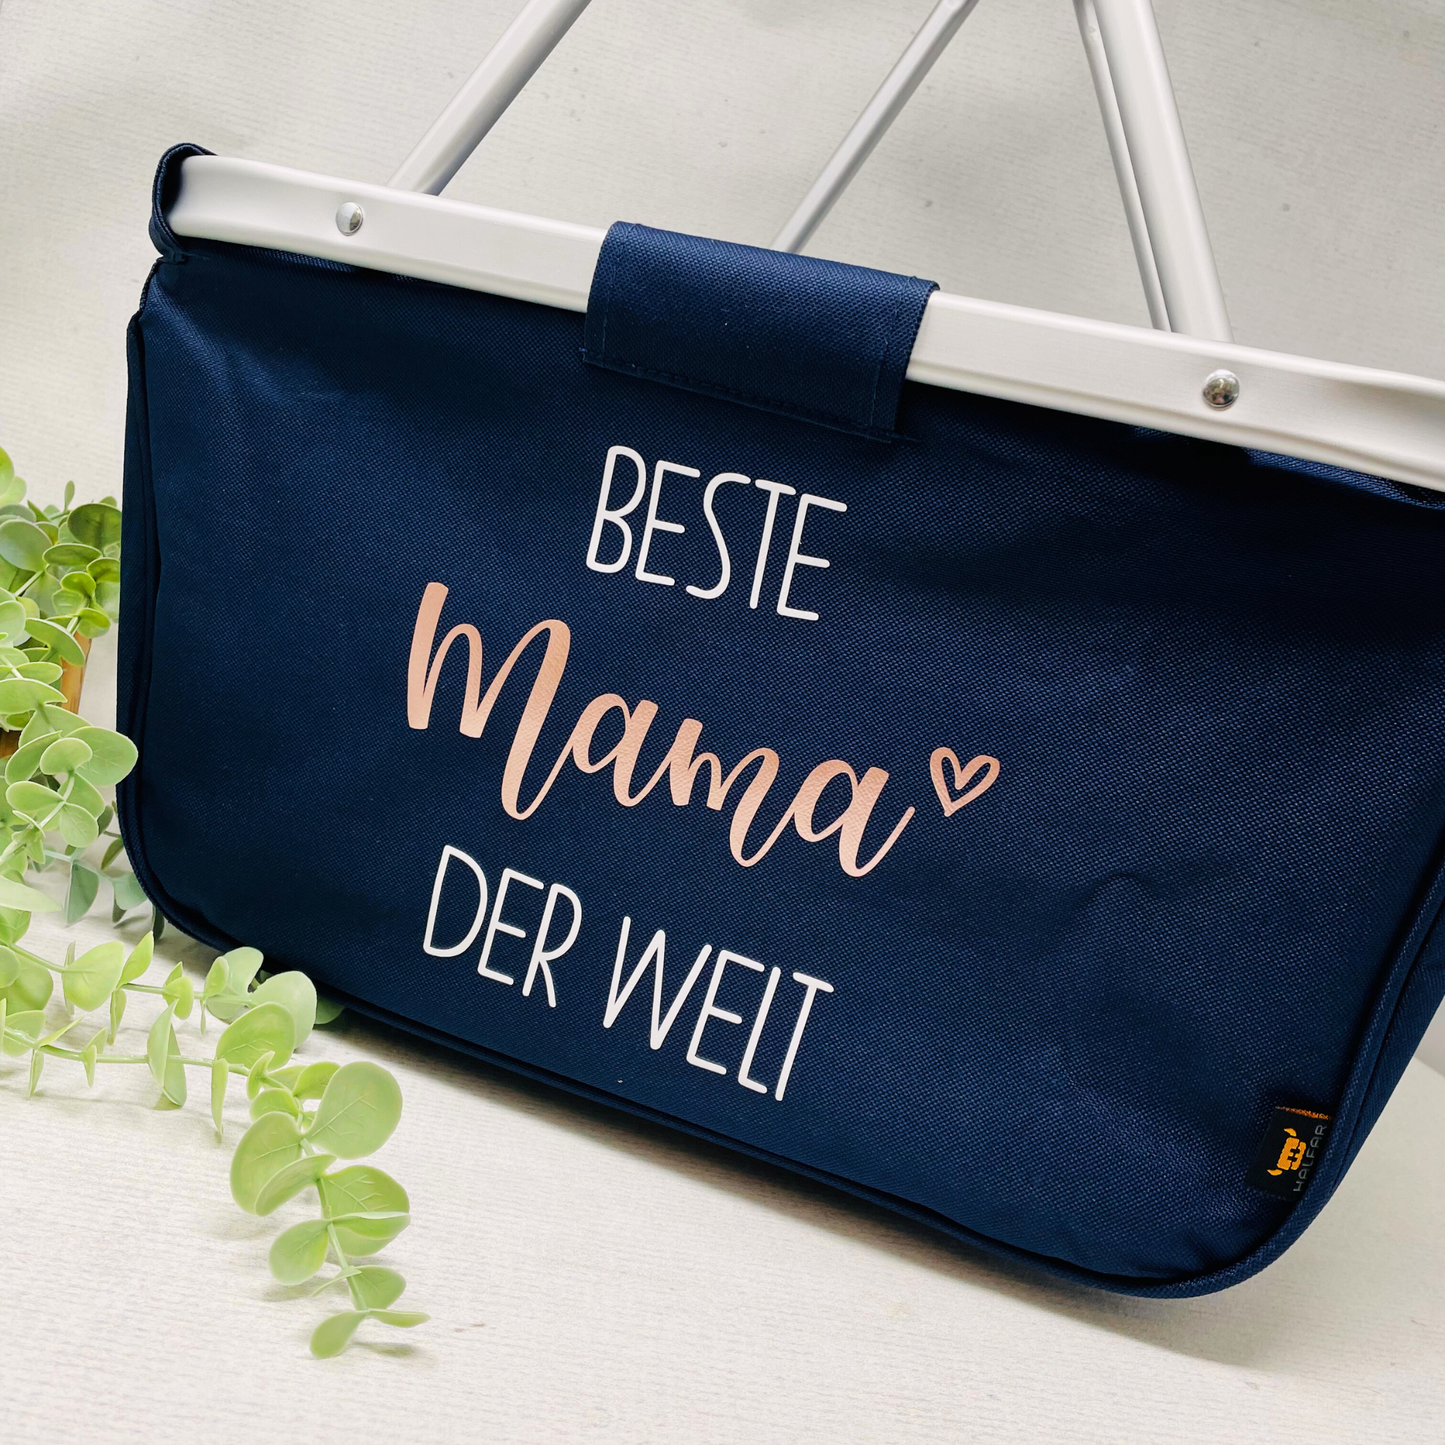 Geschenk für die Mama - Einkaufskorb Beste Mama der Welt - faltbar - Farbe navy blau grau schwarz